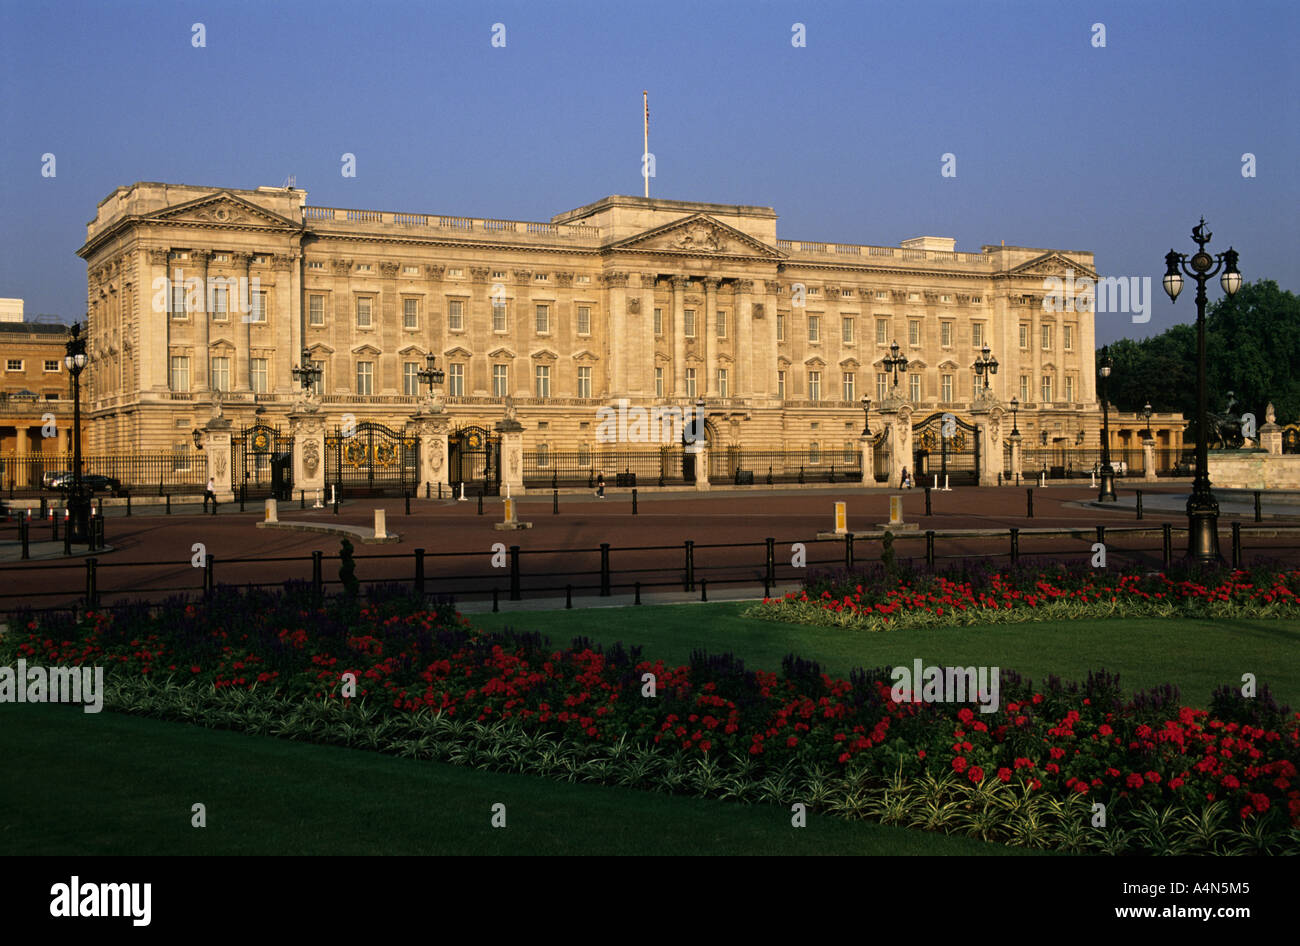 Buckingham Palace, London, UK. Stock Photo